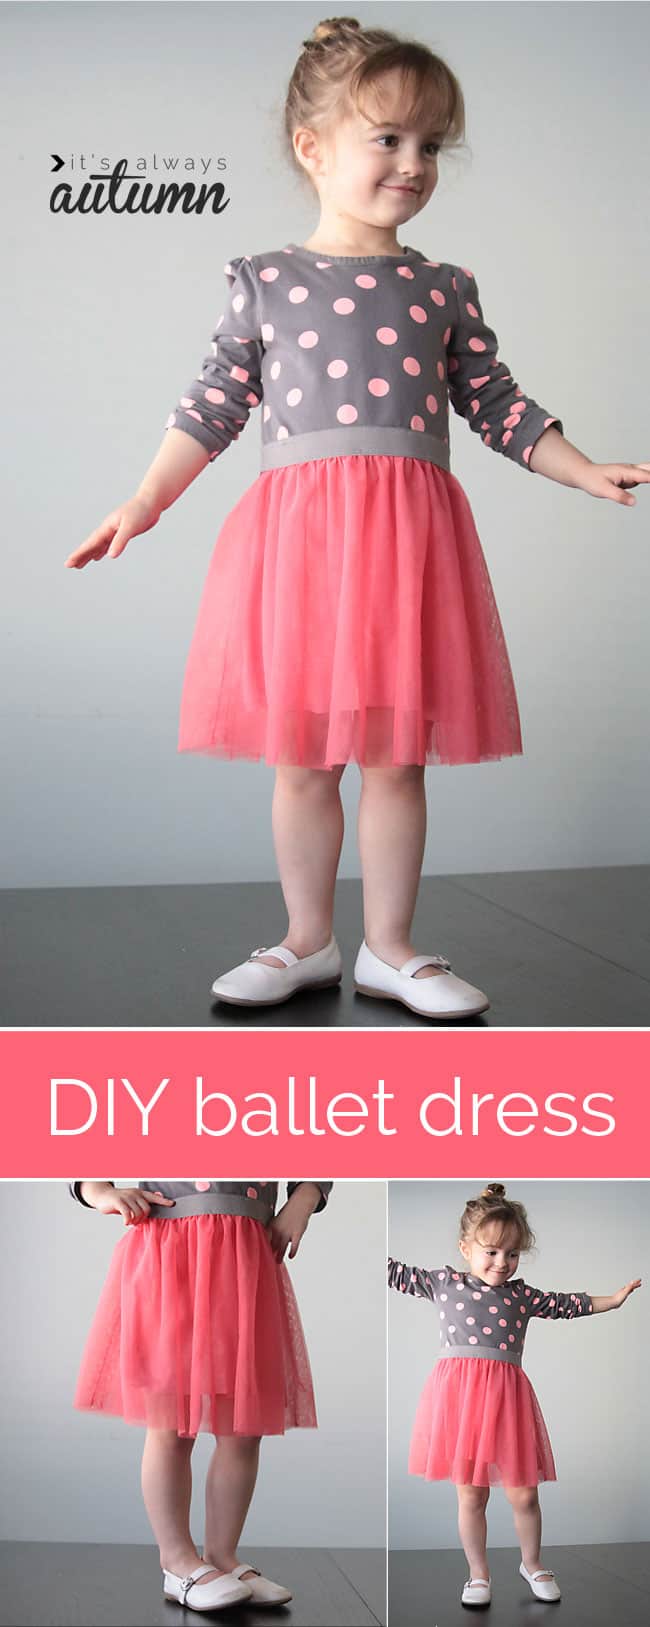 Ballet inspired dress